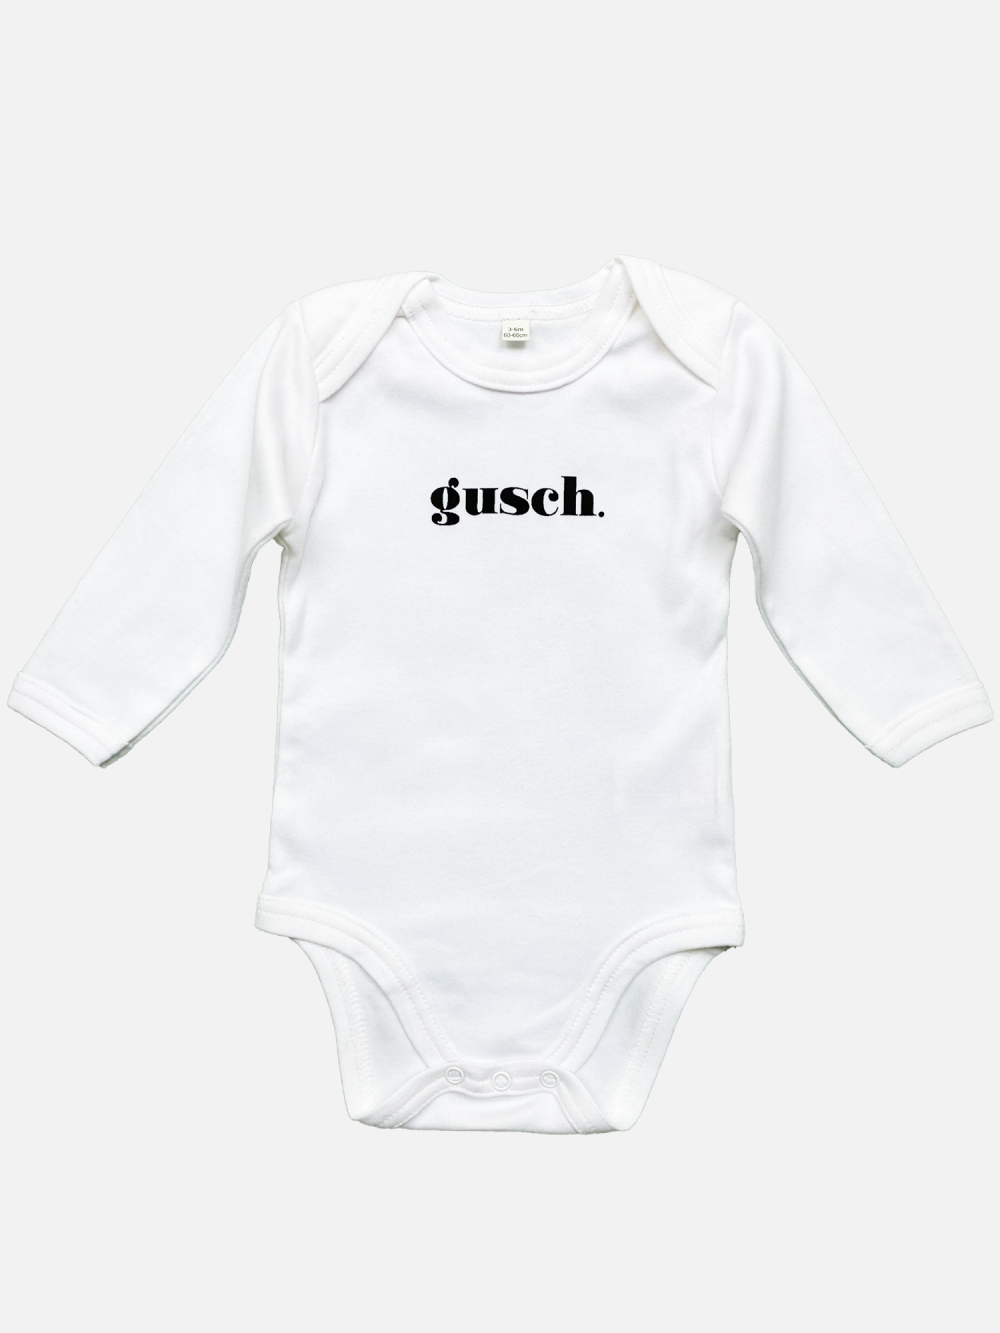 KITSCH BITCH Gusch baby bodysuit